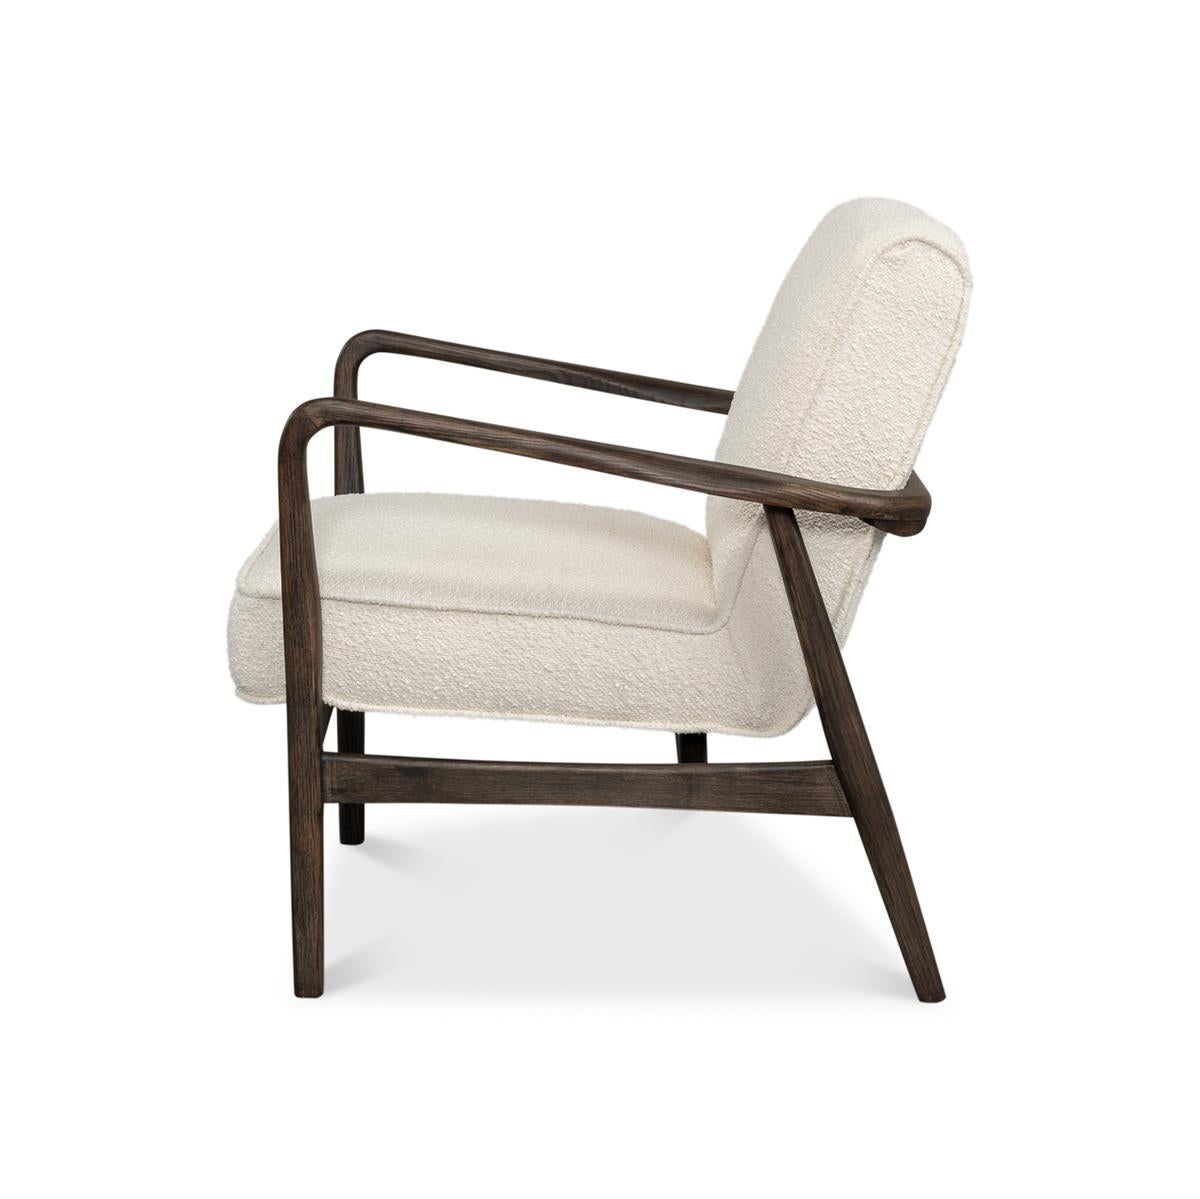 Mid-Century-Sessel mit elfenbeinfarbenem Boucle-Stoff, warmes Finish des Eschengestells. Stilvolle Stuhloption für jeden Raum.

Abmessungen: 27